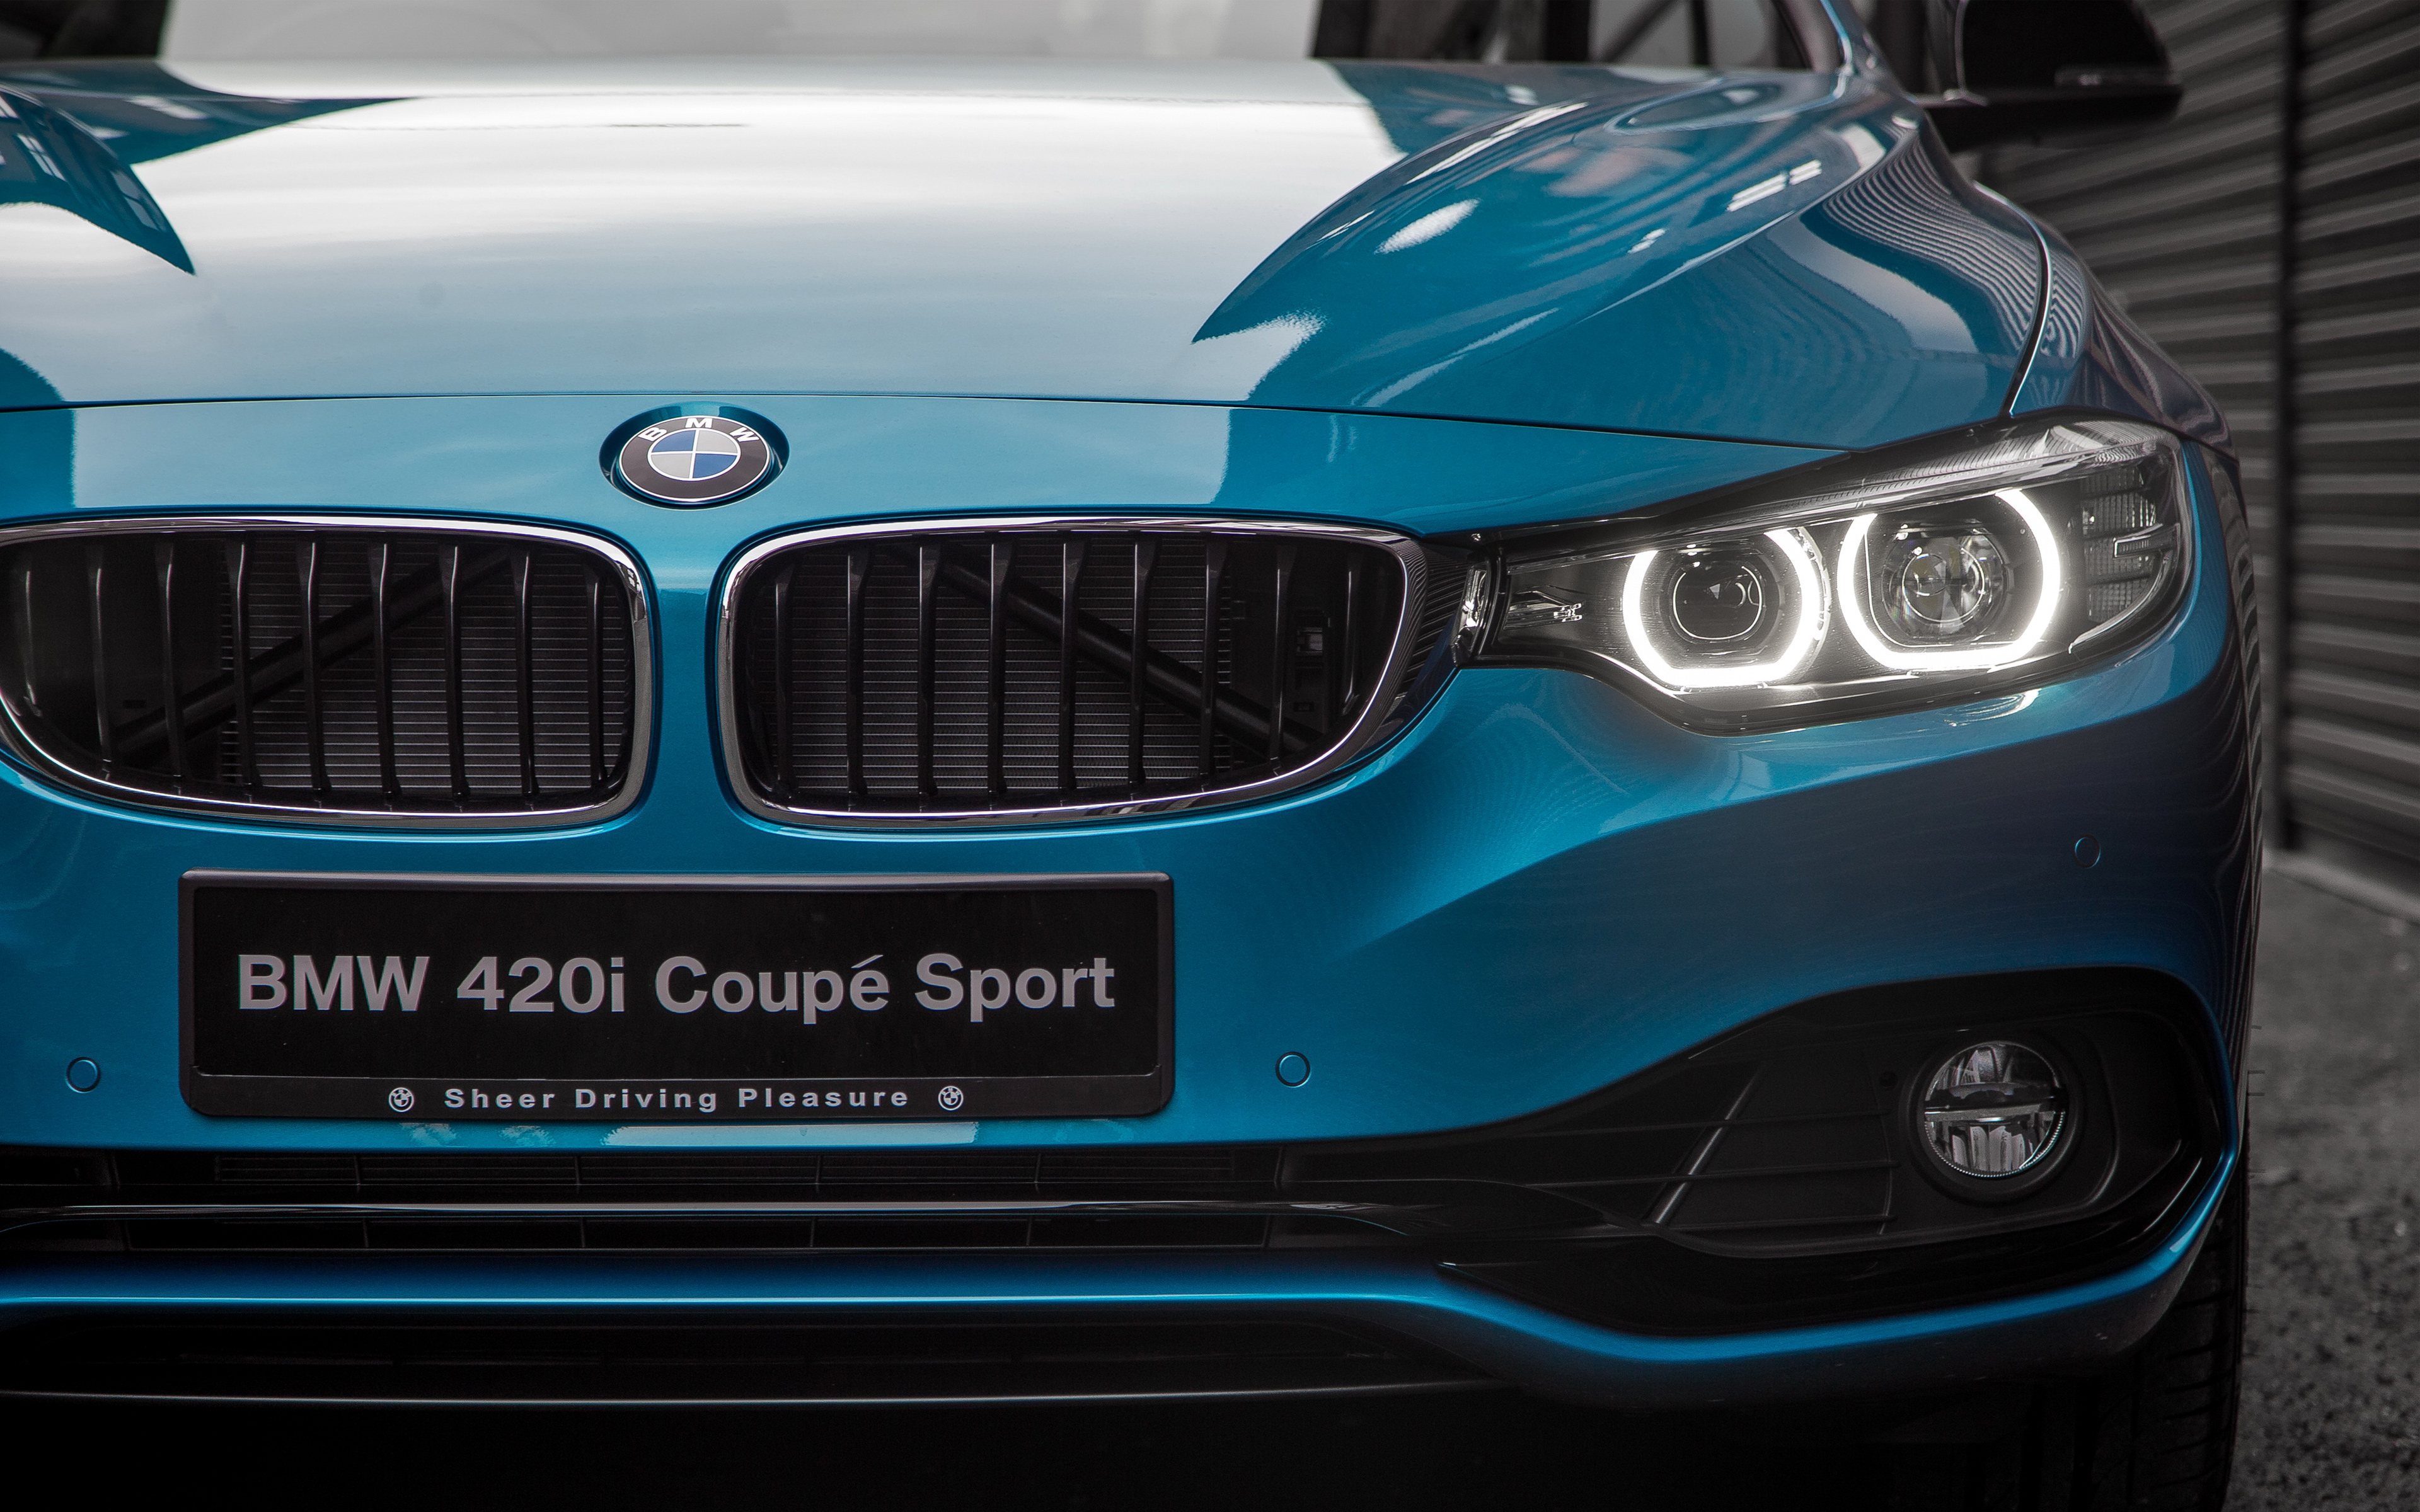 2017 BMW 420i Coupe Sport 4K71077605 - 2017 BMW 420i Coupe Sport 4K - Sport, Coupe, bmw, 420i, 2017